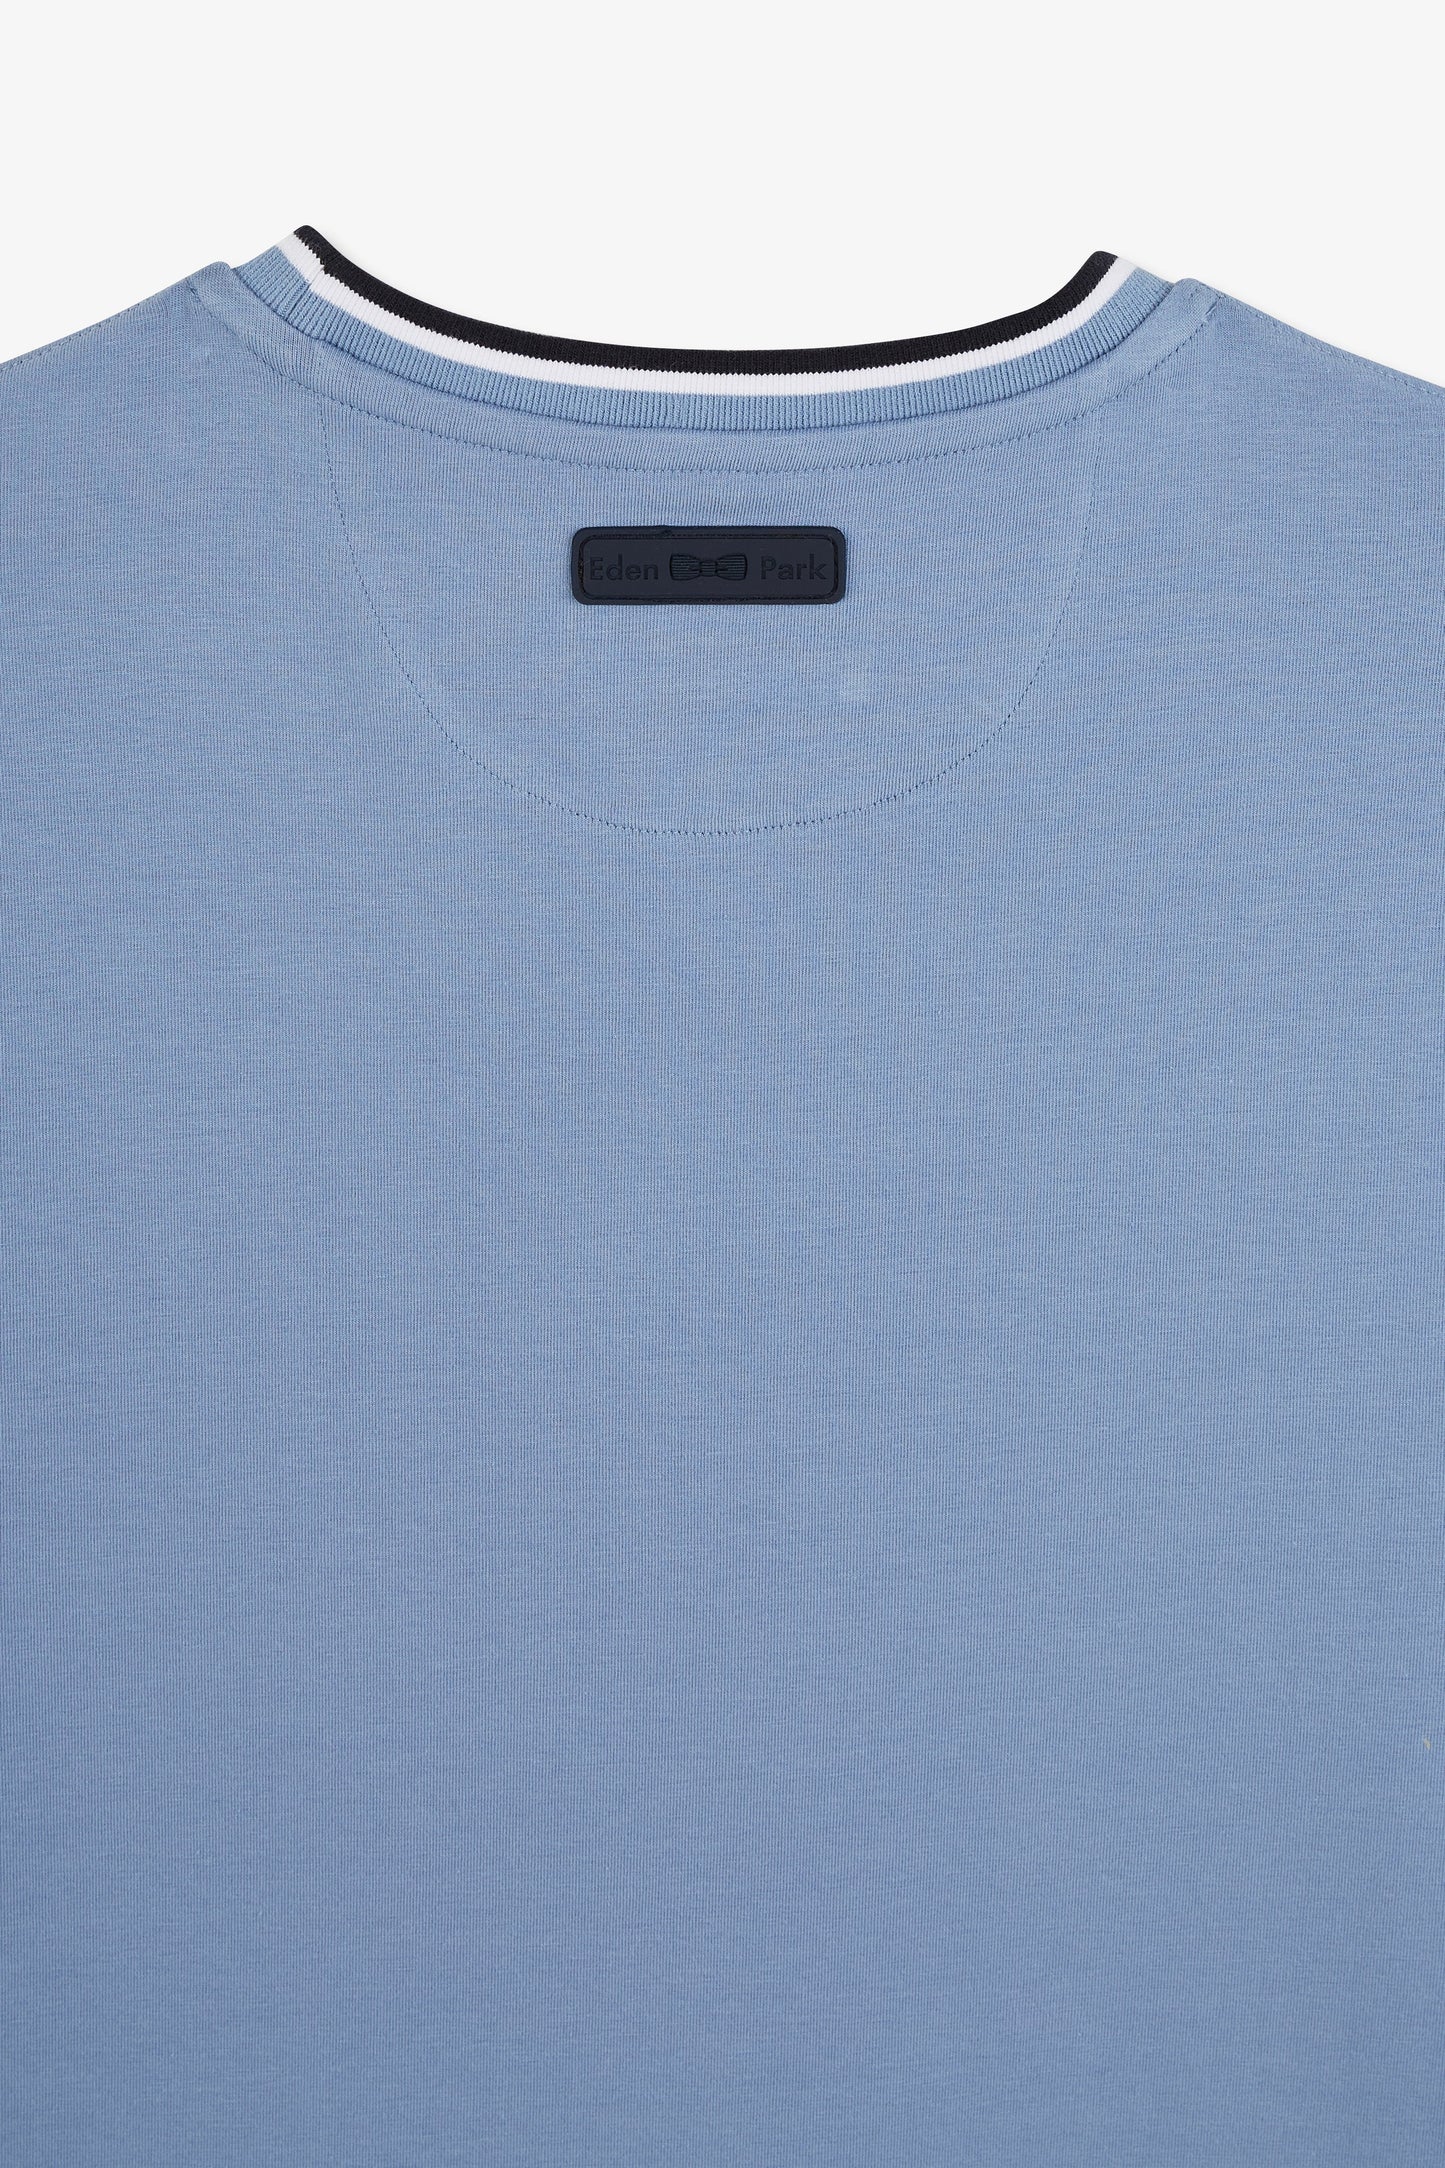 T-shirt bleu uni à manches courtes - Image 3